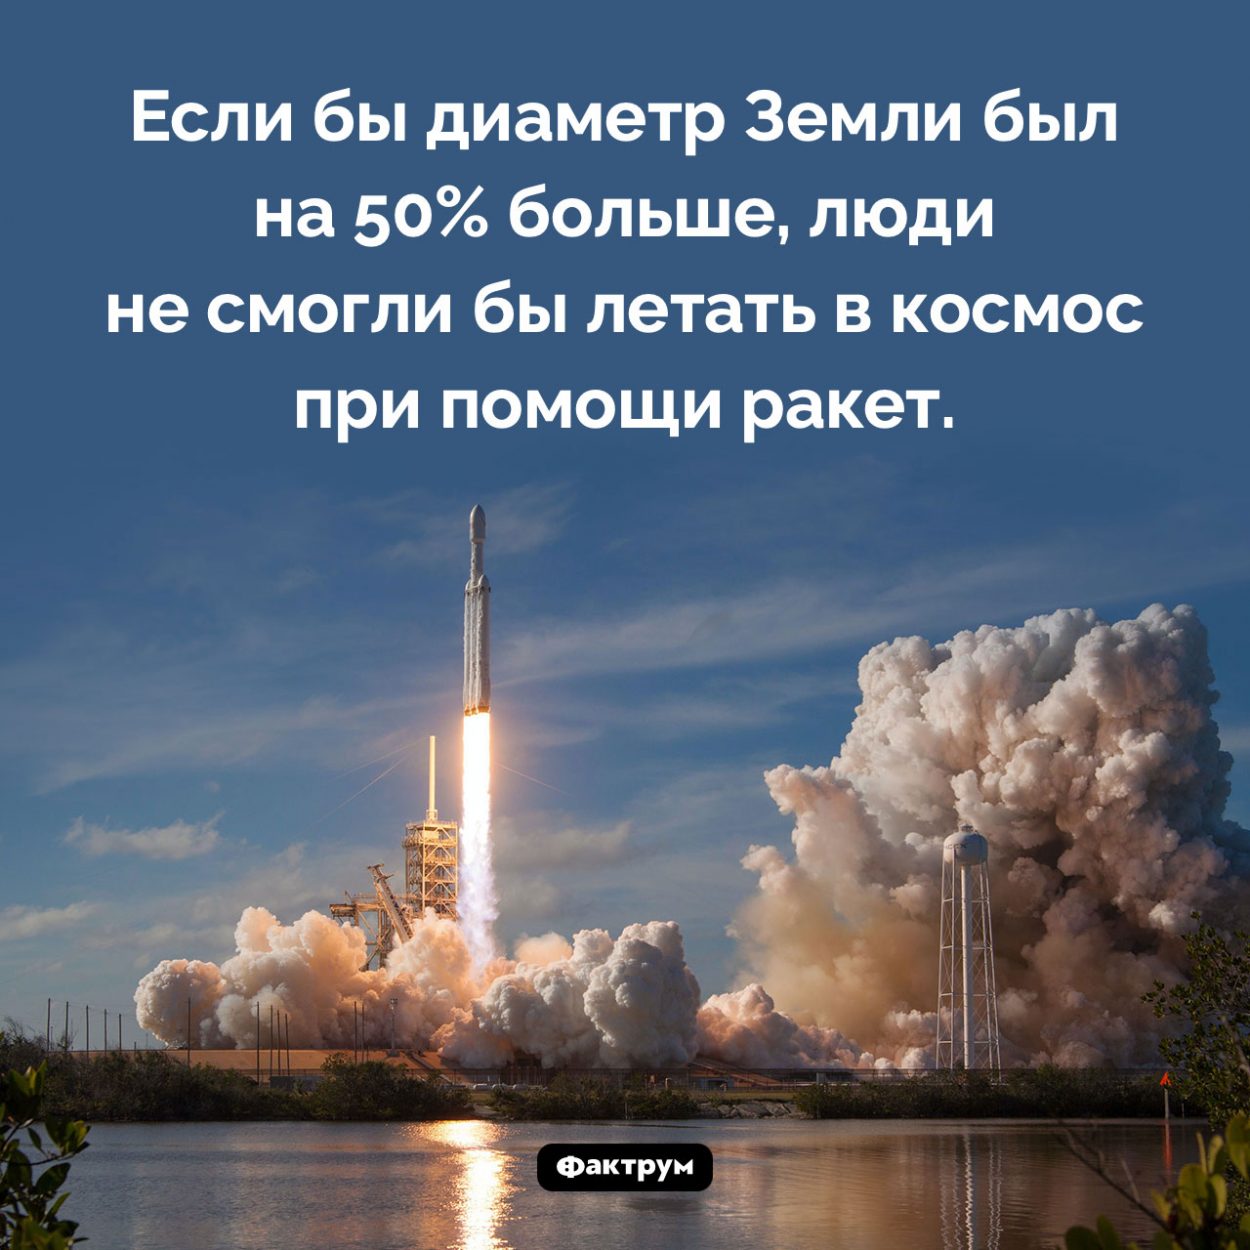 Диаметр Земли и полеты в космос. Если бы диаметр Земли был на 50% больше, люди не смогли бы летать в космос при помощи ракет.